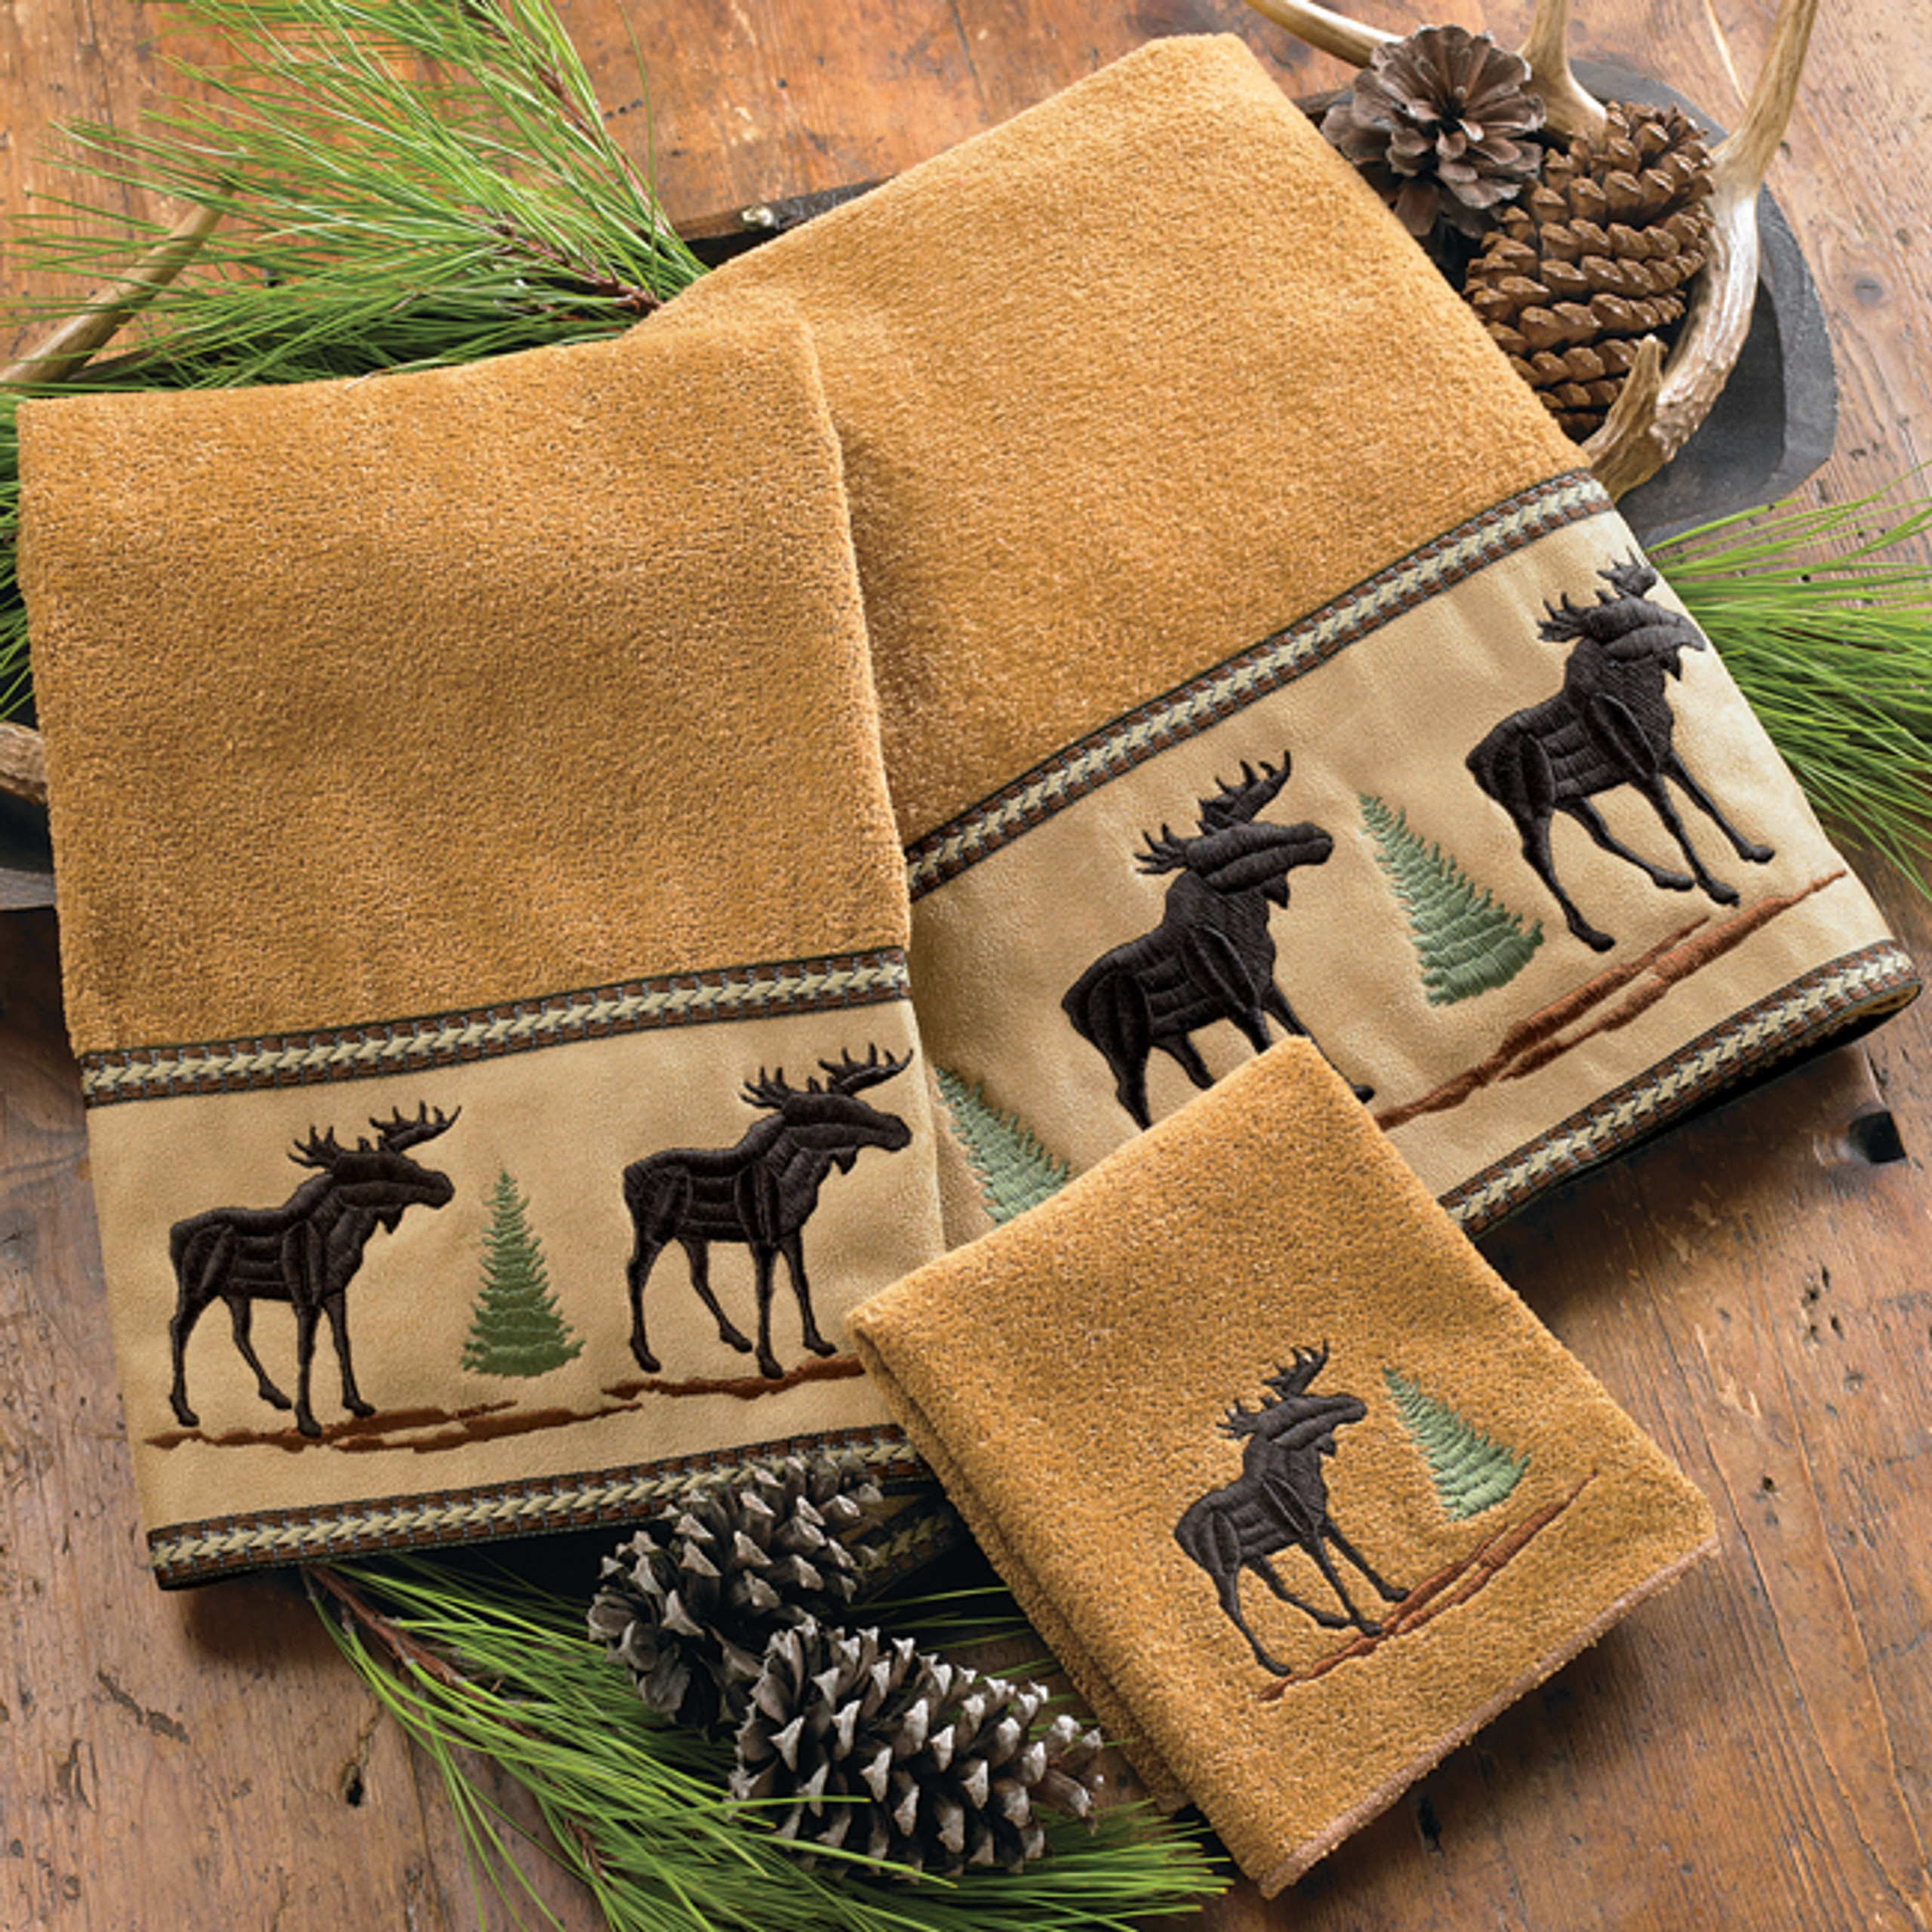 Bear Towels, Moose & Pine Cone Bath Towels | Black Forest Décor